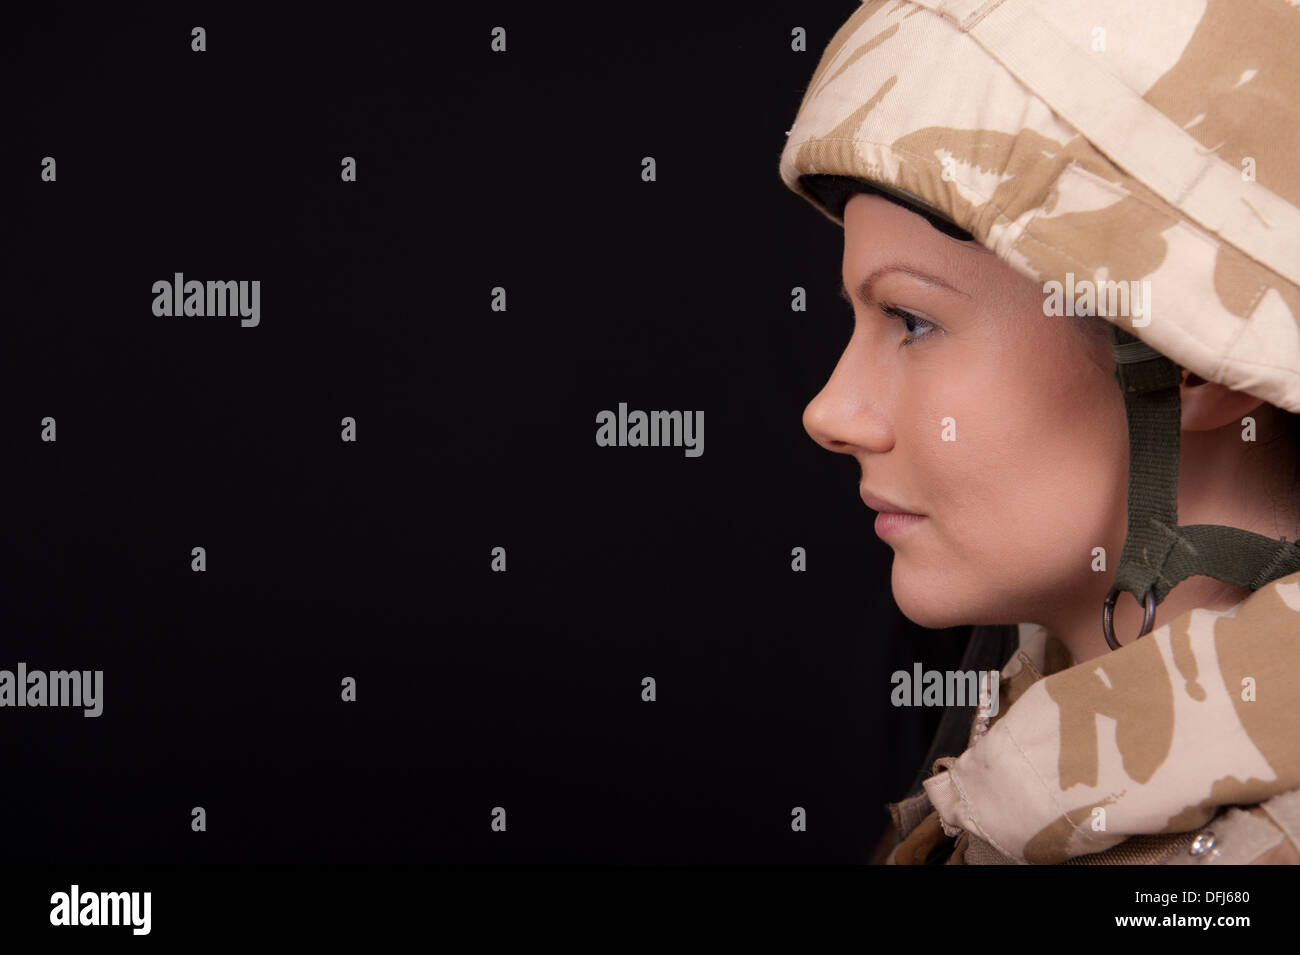 Giovani donne soldato indossando militare inglese desert camouflage uniforme, contro uno sfondo nero. Foto Stock